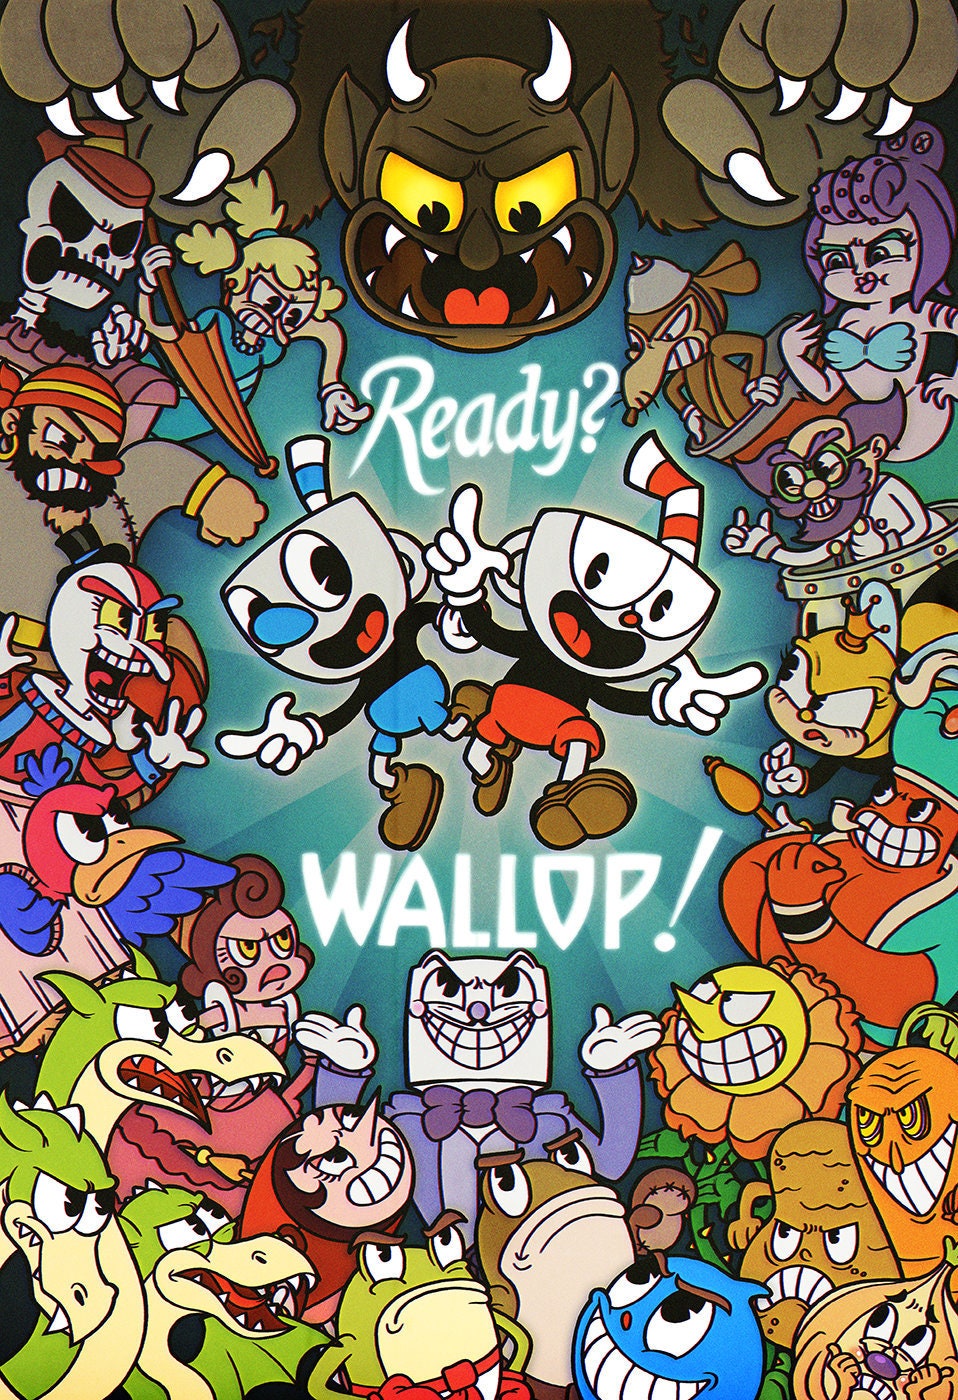 Ready? Wallop! (13"x19" Print)